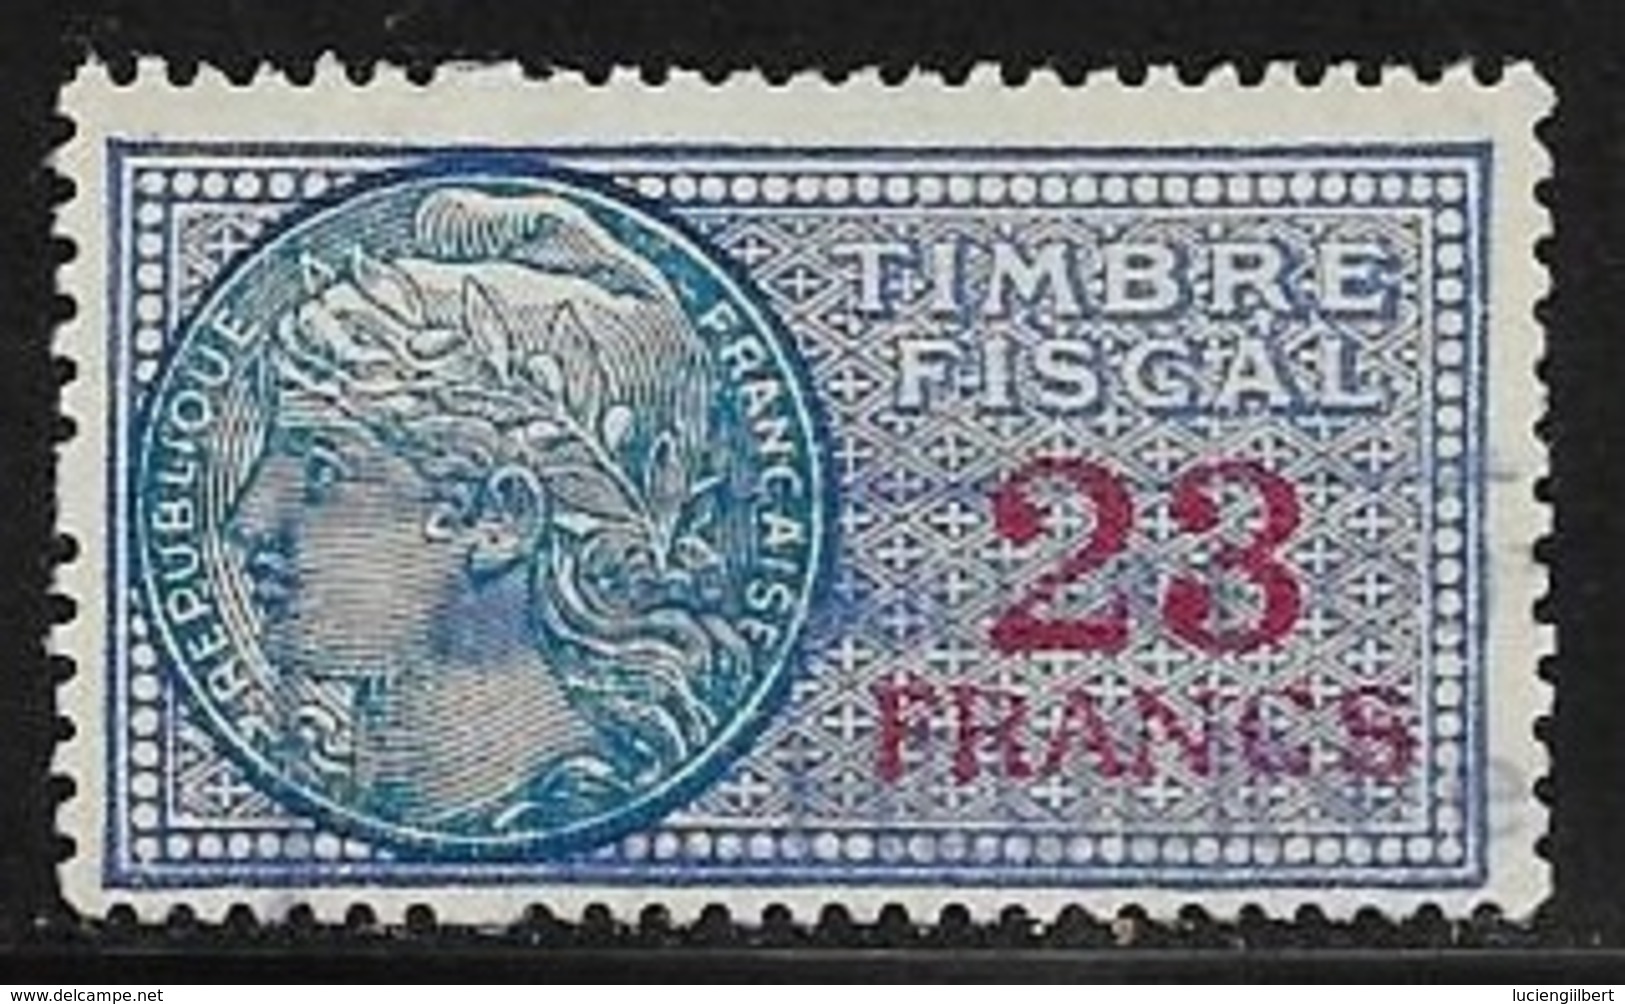 TIMBRE FISCAL N° 152  -   23 F  ROUGE SUR BLEU   - MEDAILLON DE DAUSSY  FOND ETOILE   -   OBLITERE - Stamps